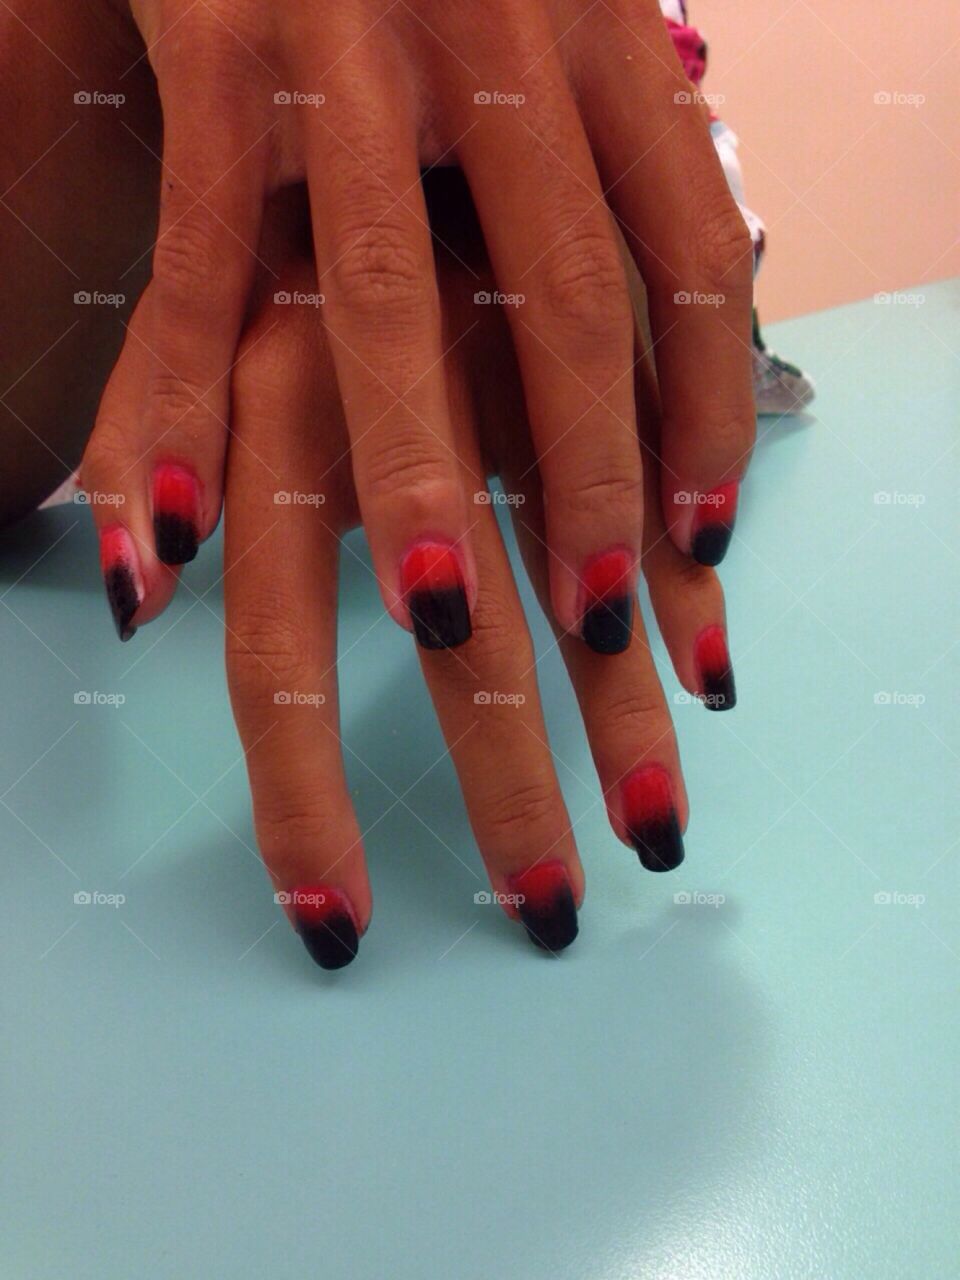 Nails art 